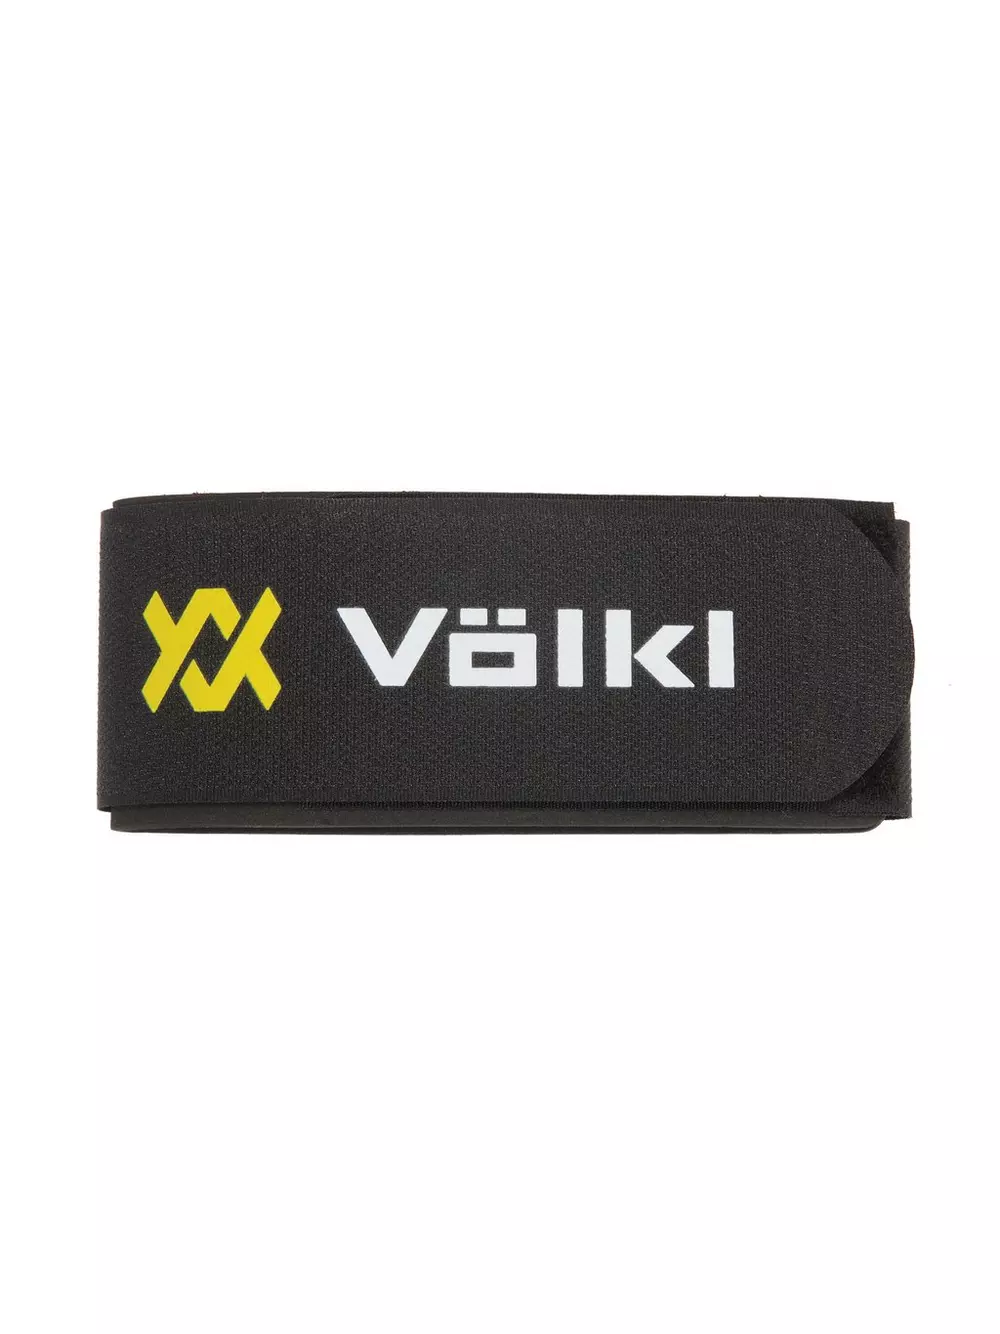 Volkl Ski Strap - Black - Pathfinder of WV